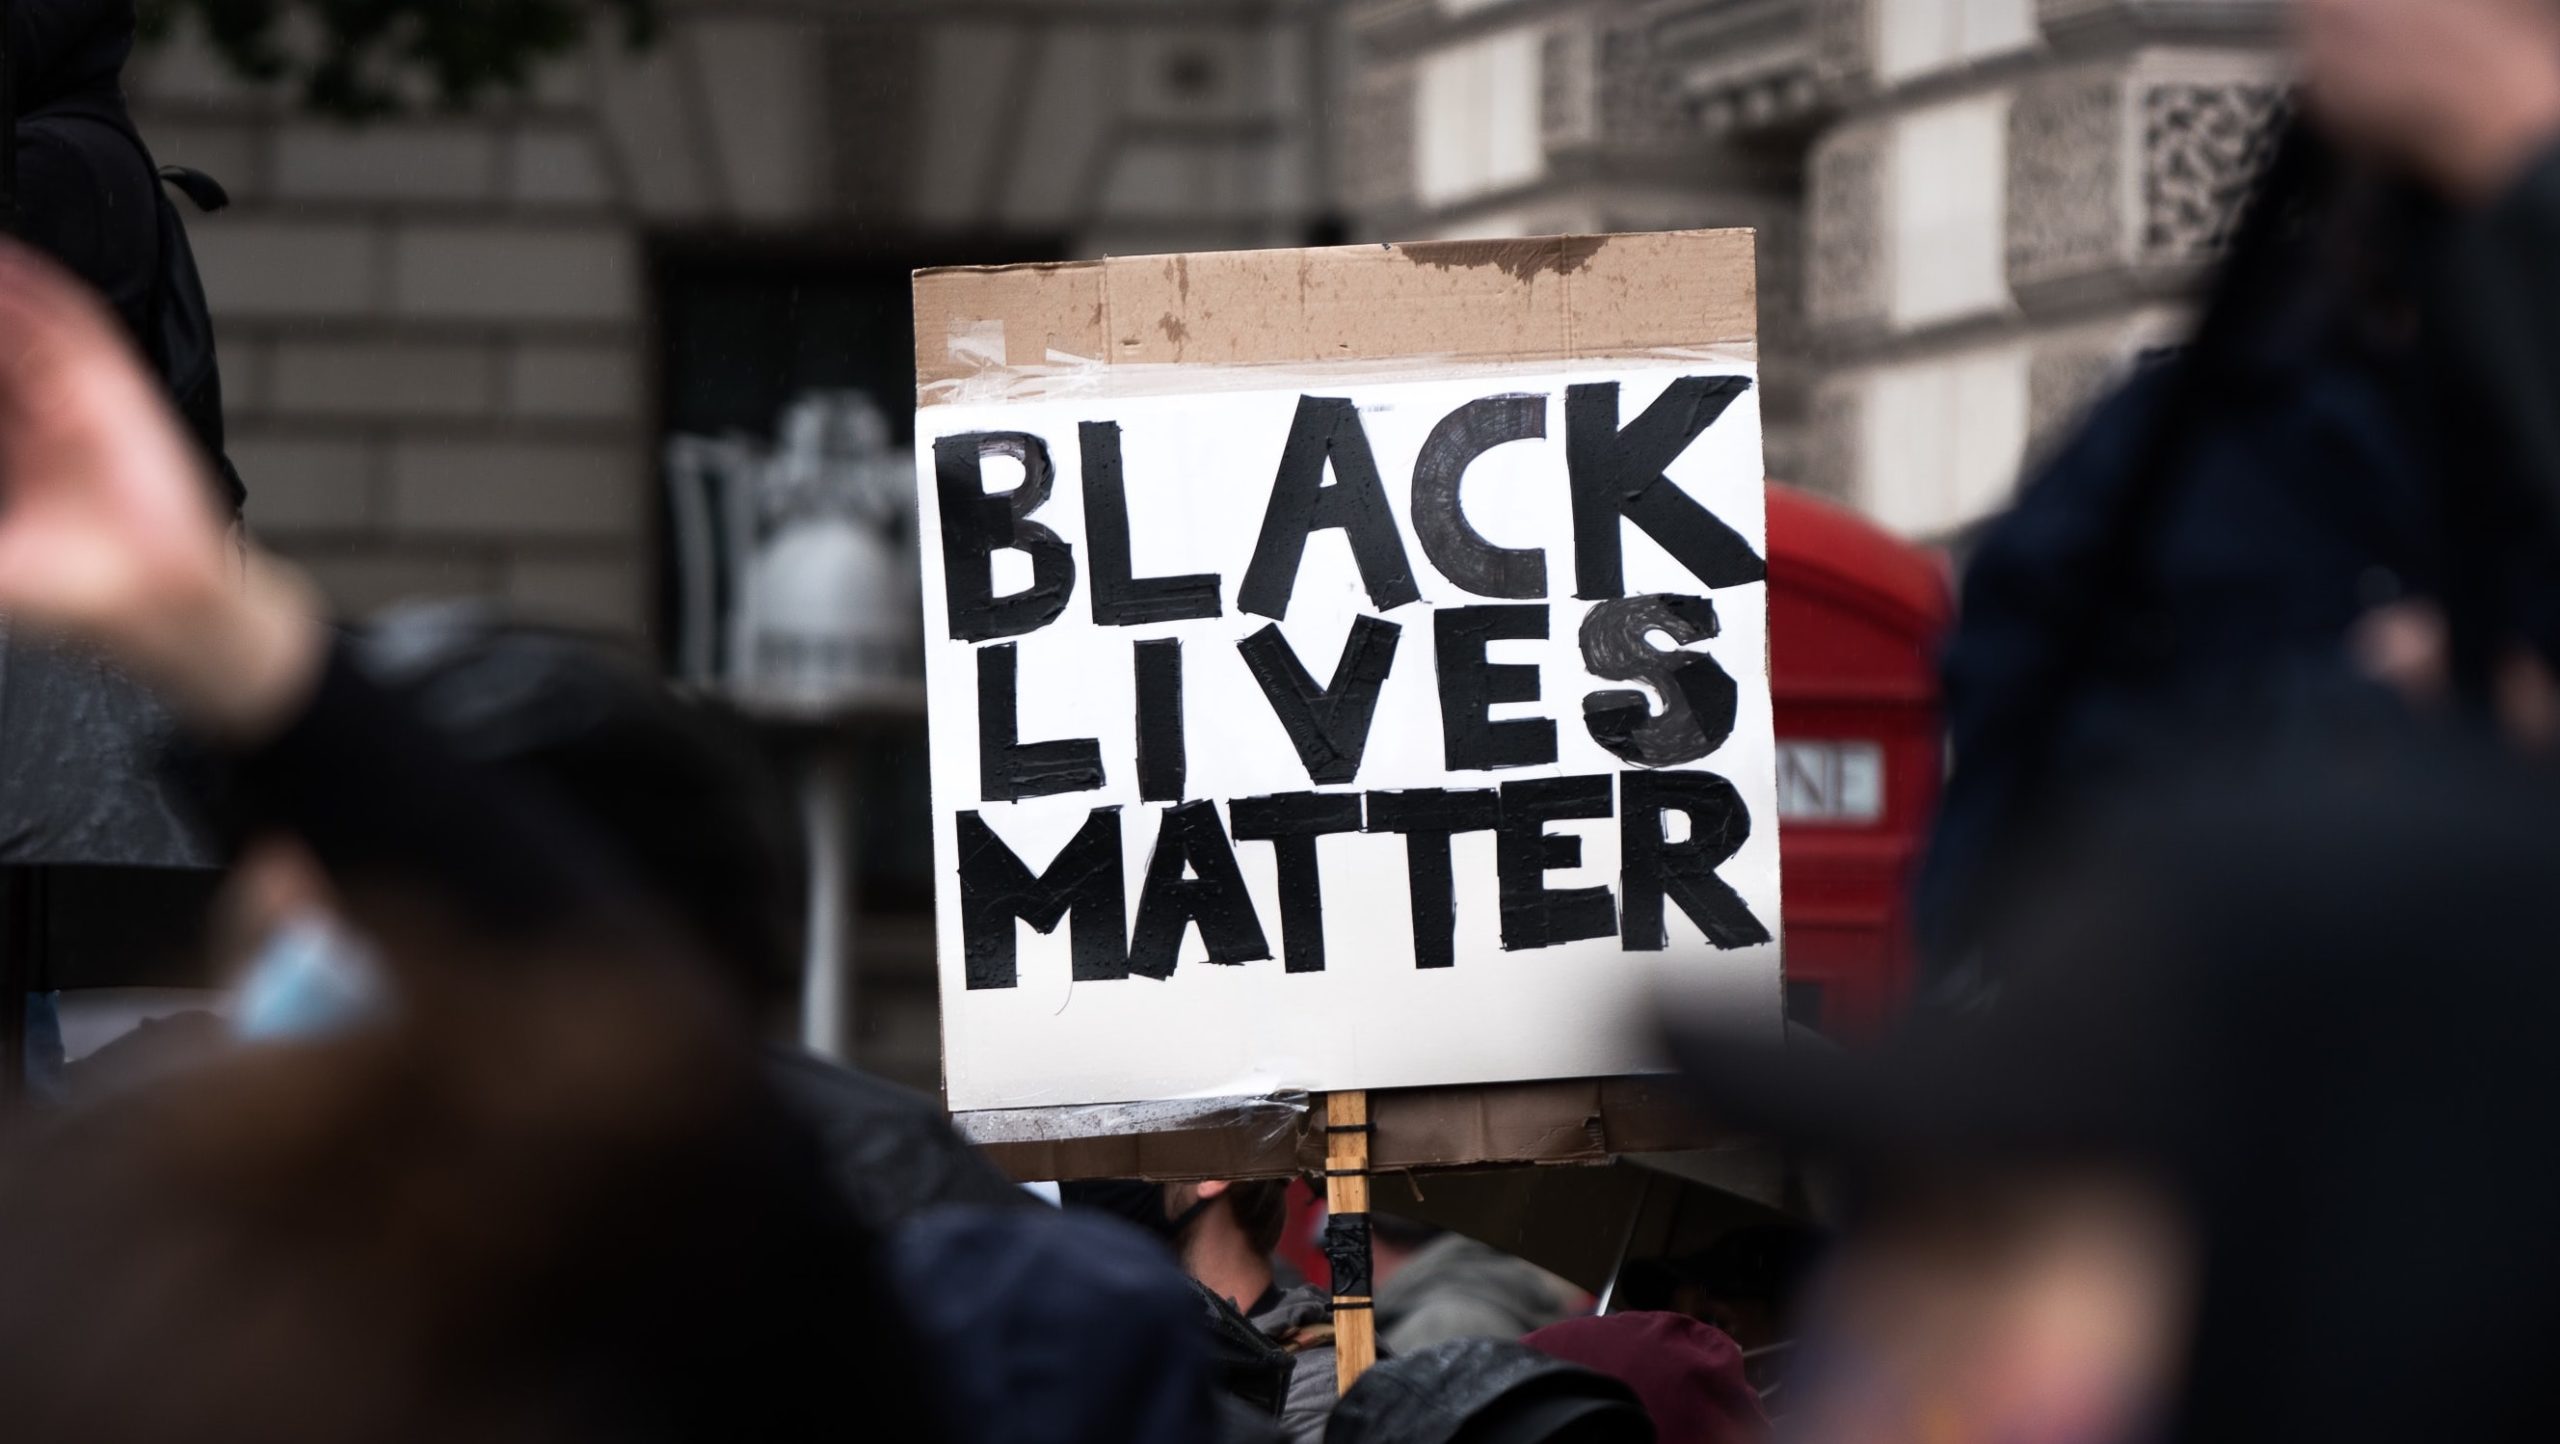 A protester holds up a Black Lives Matter sign. Photo: James Eades/Unsplash